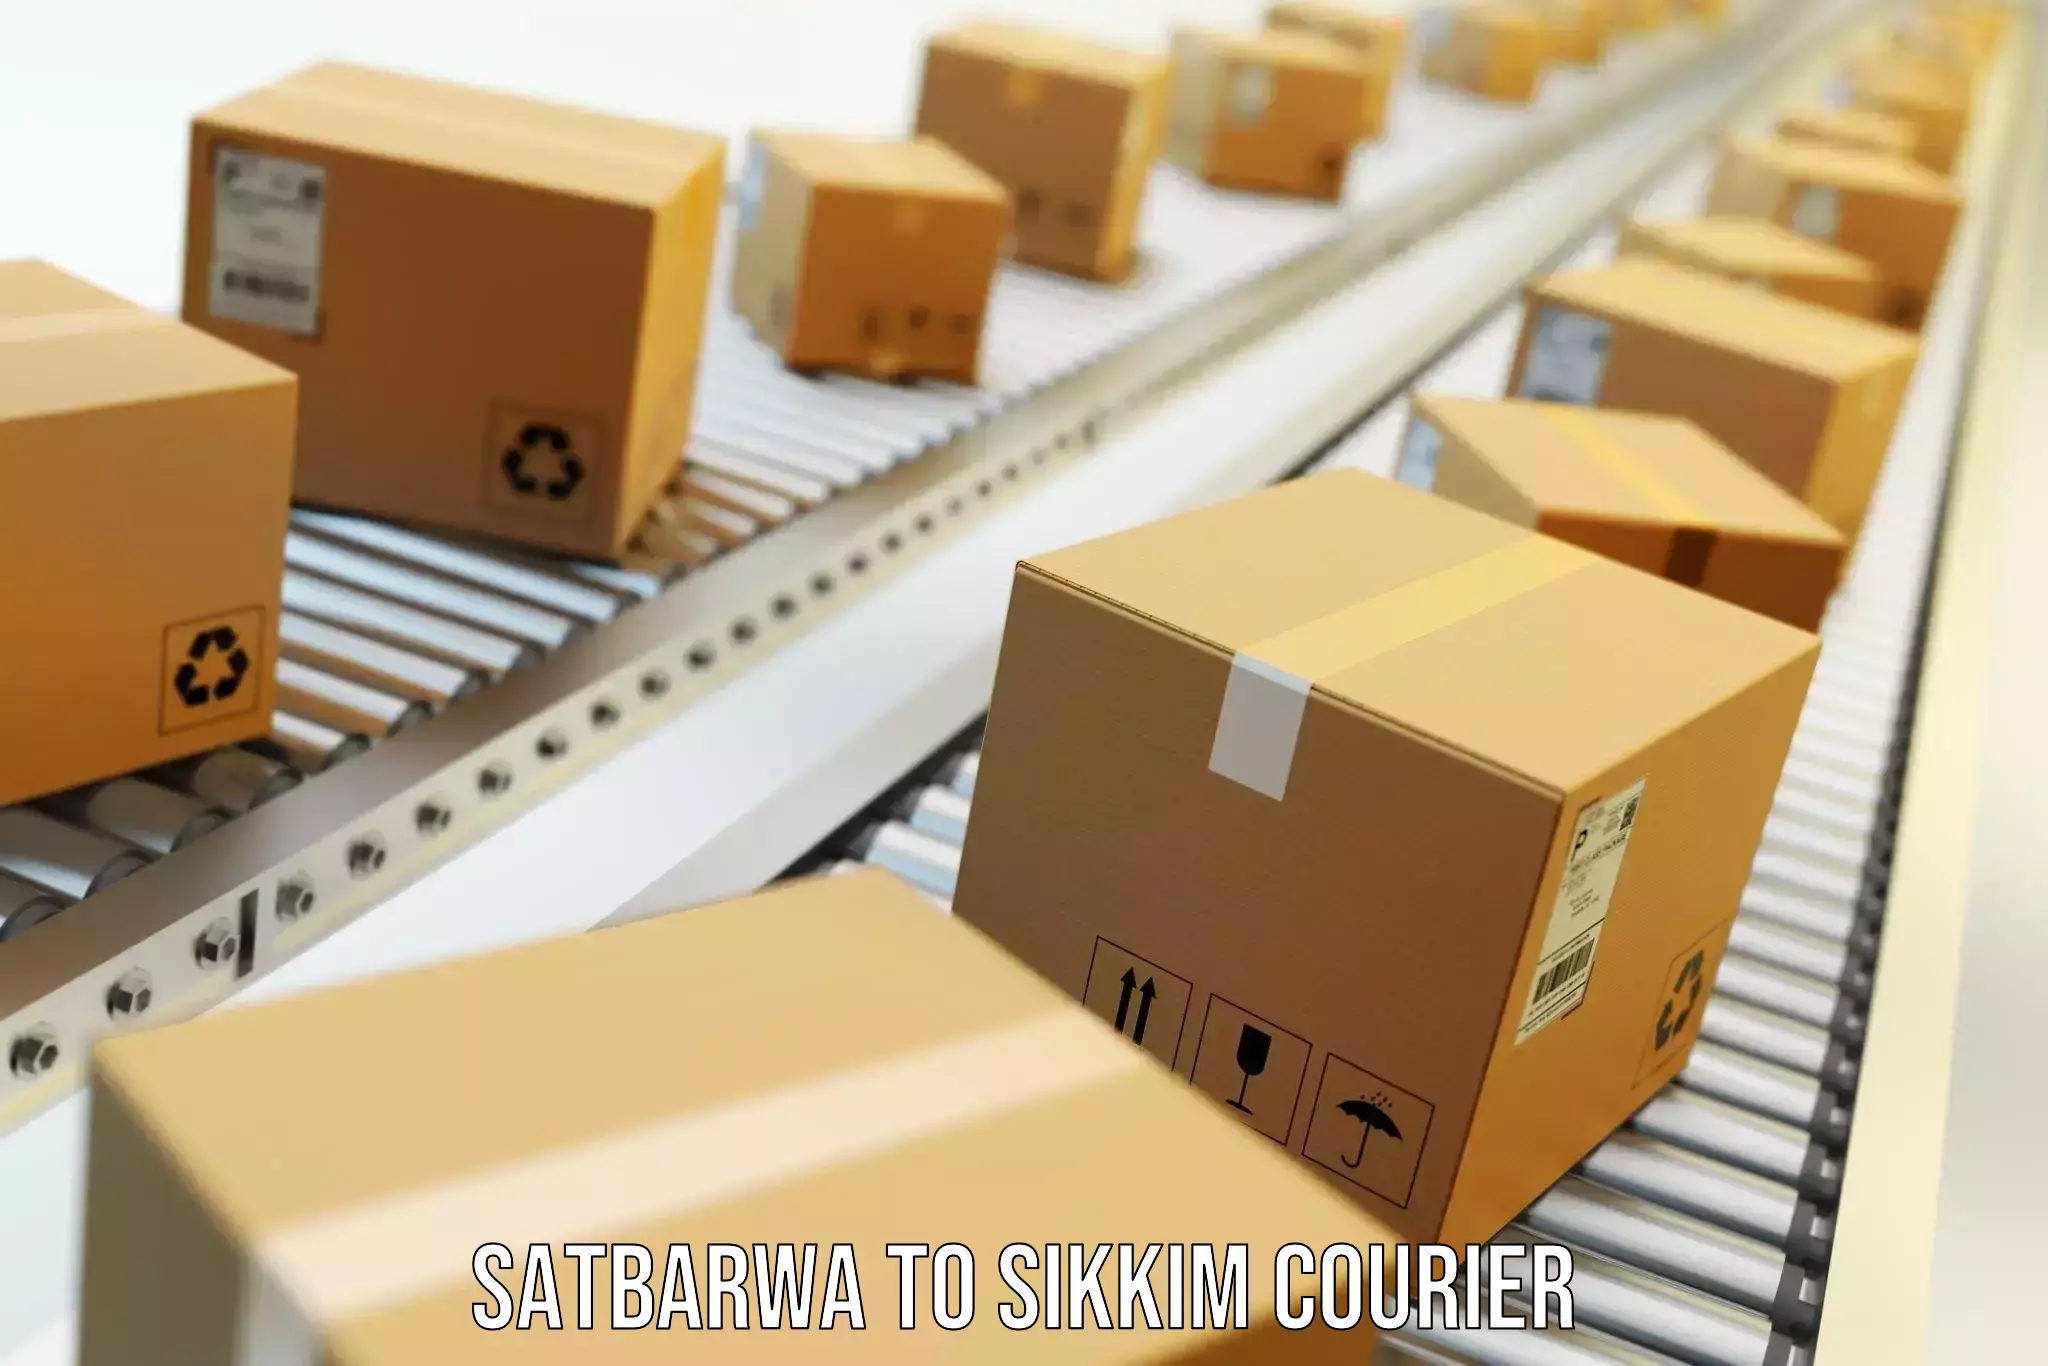 Furniture transport experts Satbarwa to Mangan